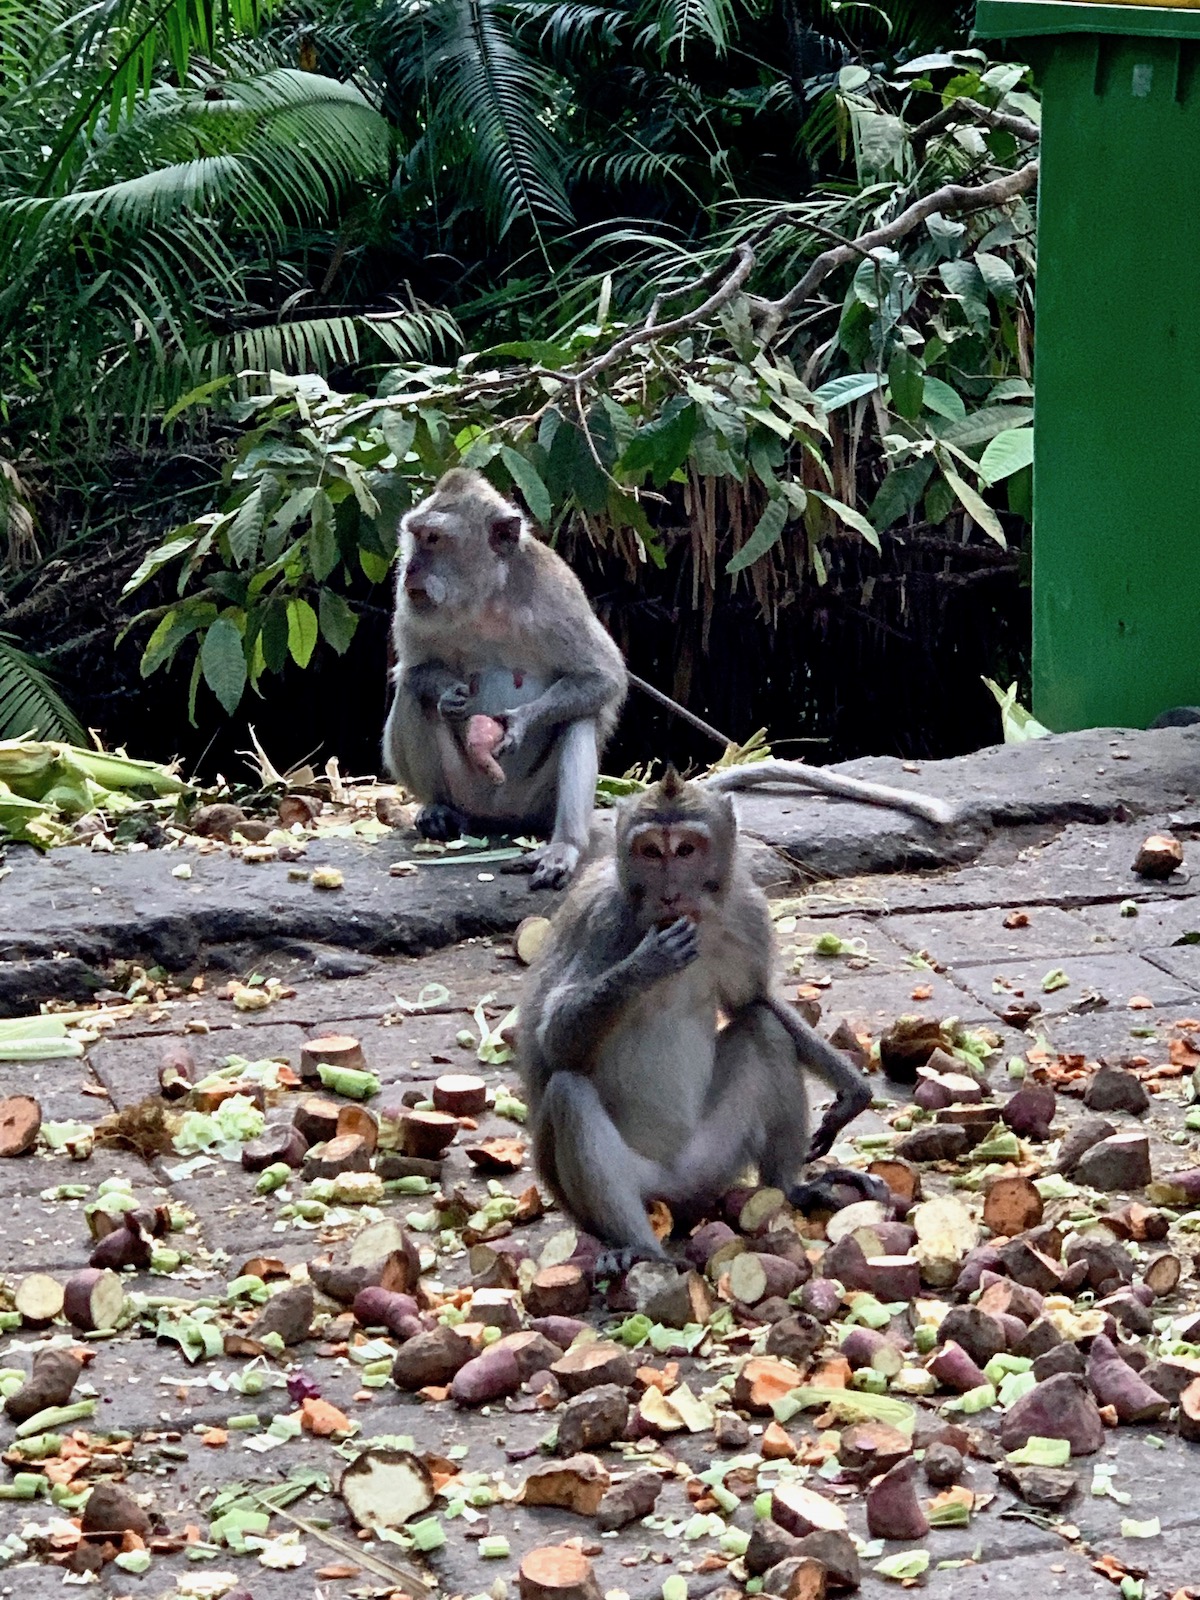 monkeys eating.jpeg